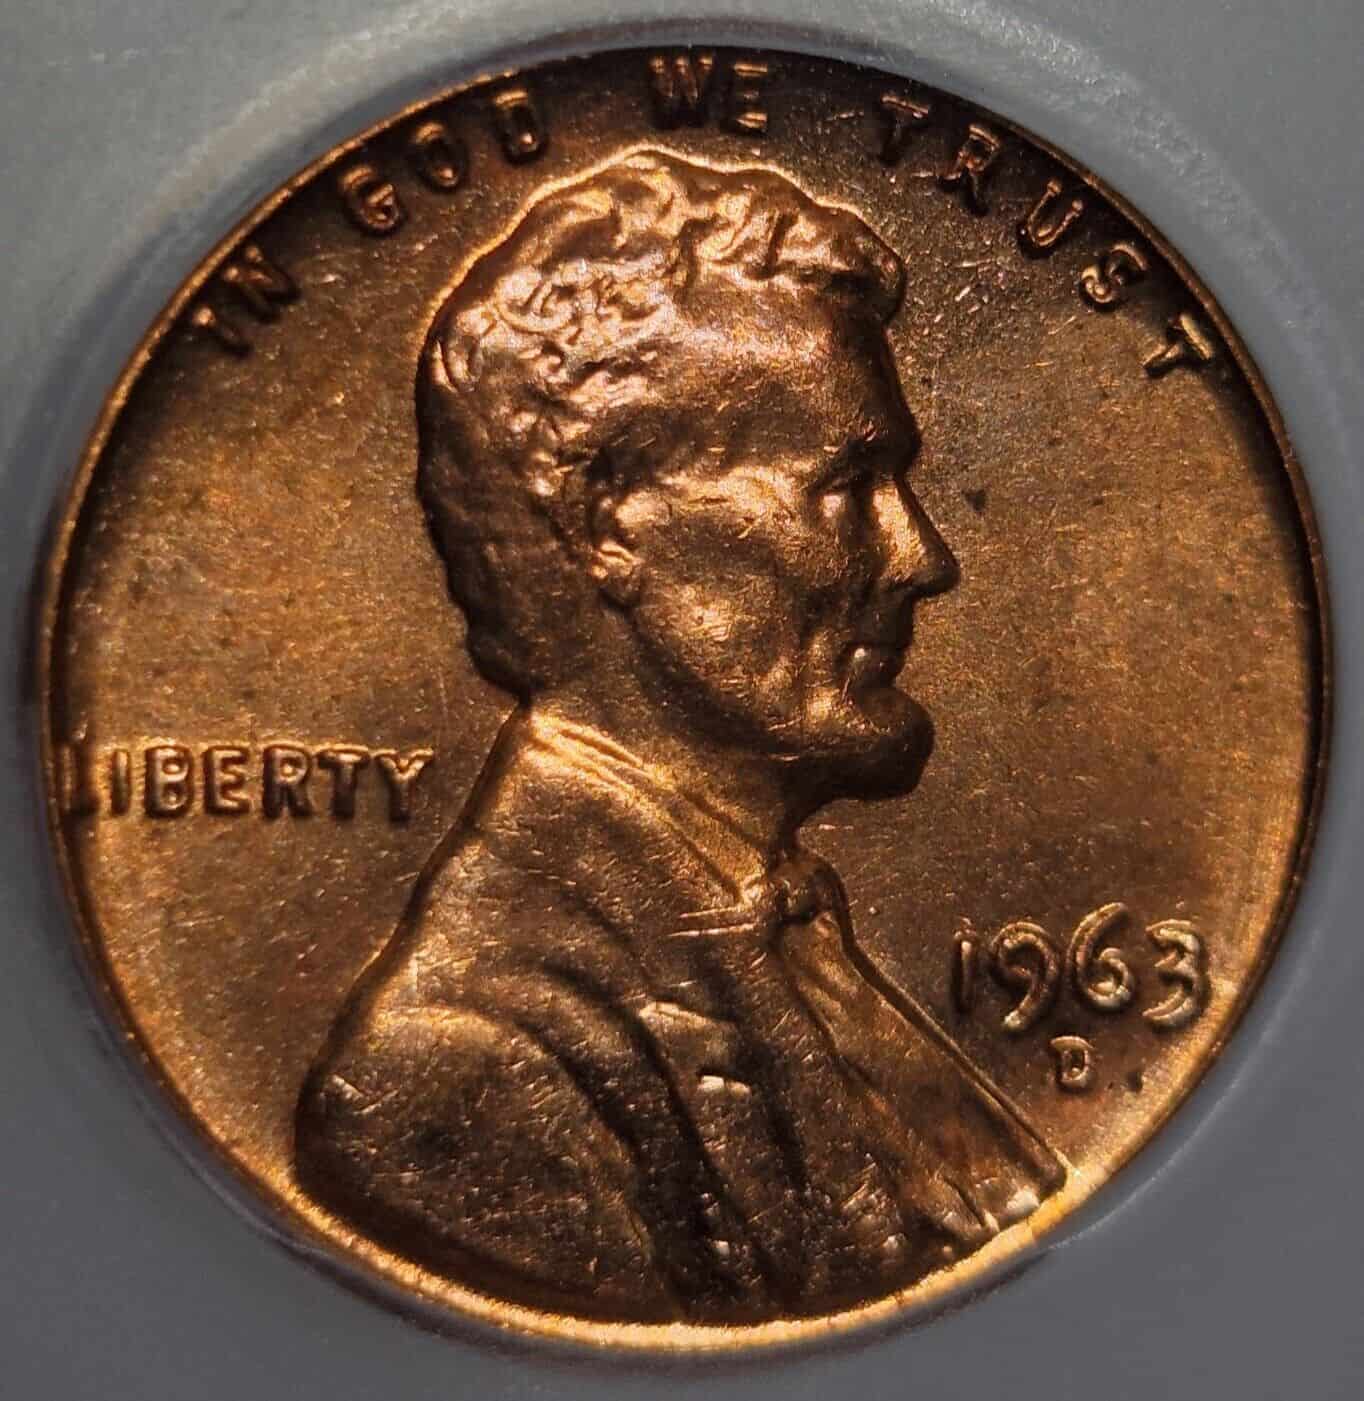 1963 D Penny